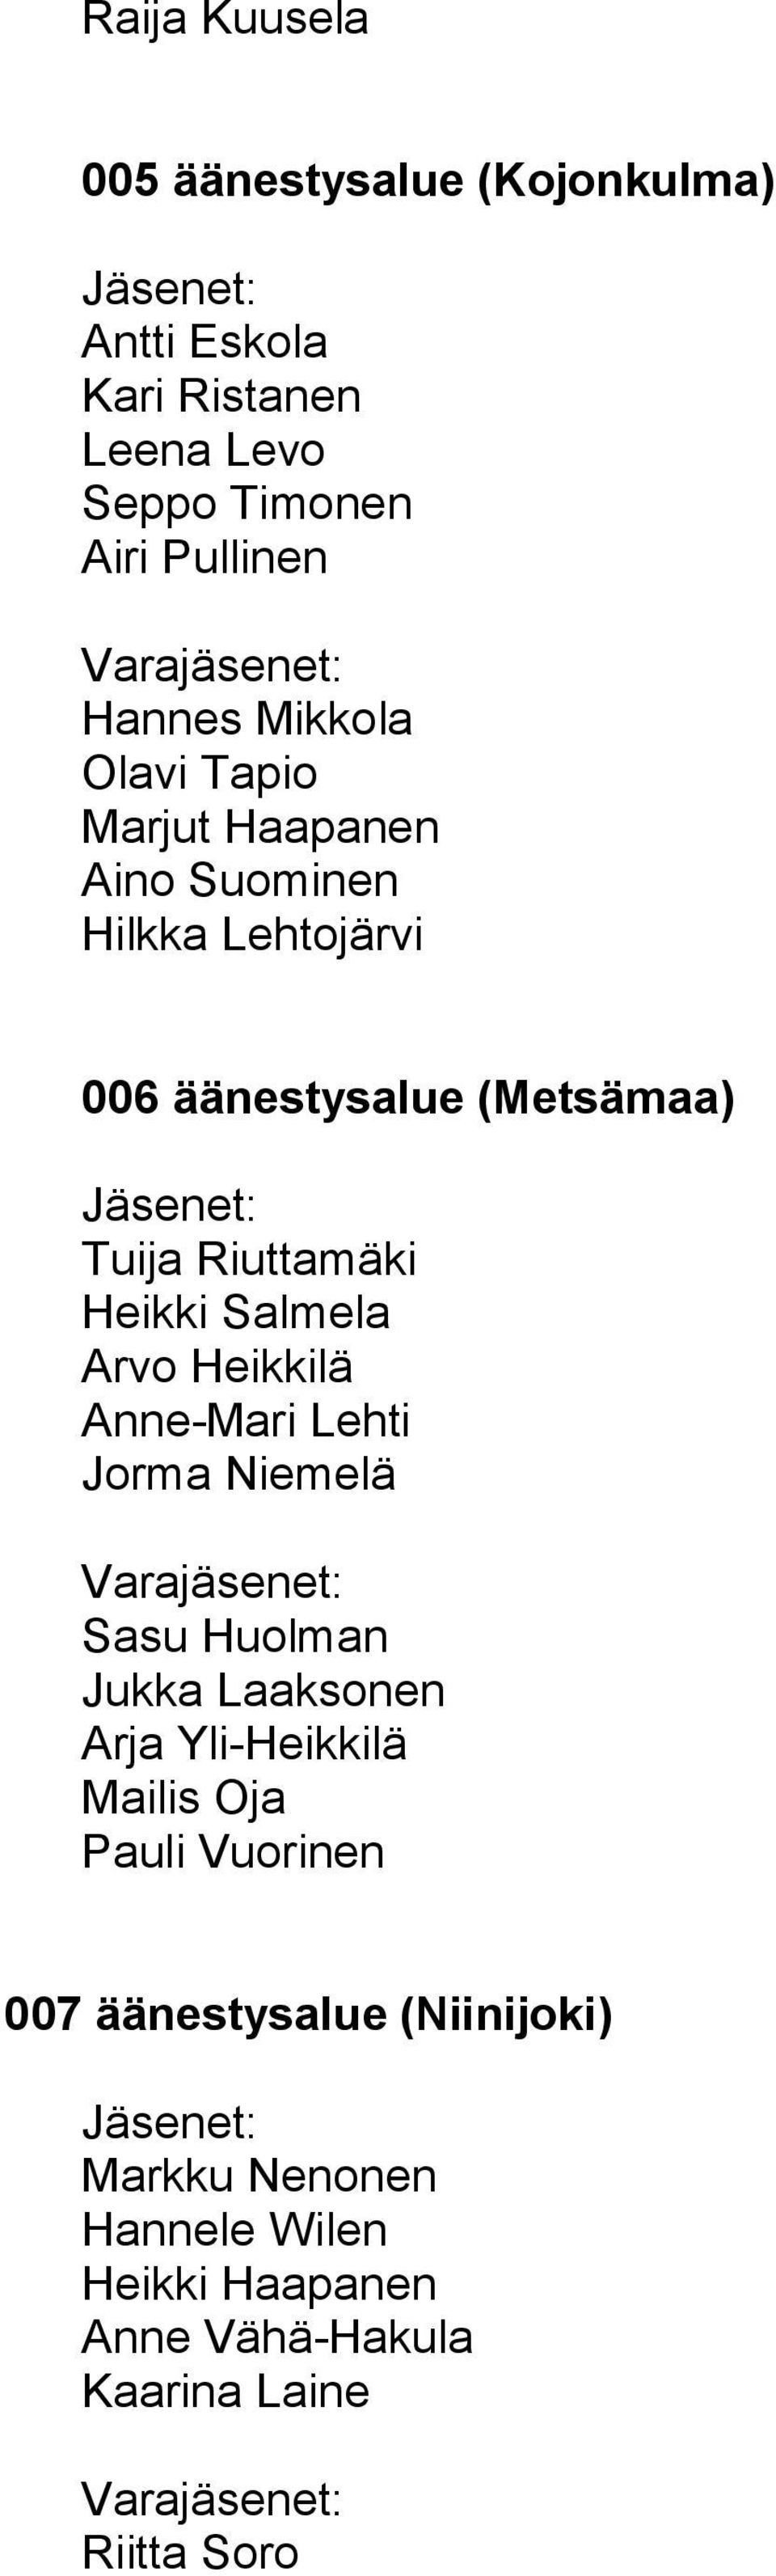 Salmela Arvo Heikkilä Anne-Mari Lehti Jorma Niemelä Sasu Huolman Jukka Laaksonen Arja Yli-Heikkilä Mailis Oja Pauli